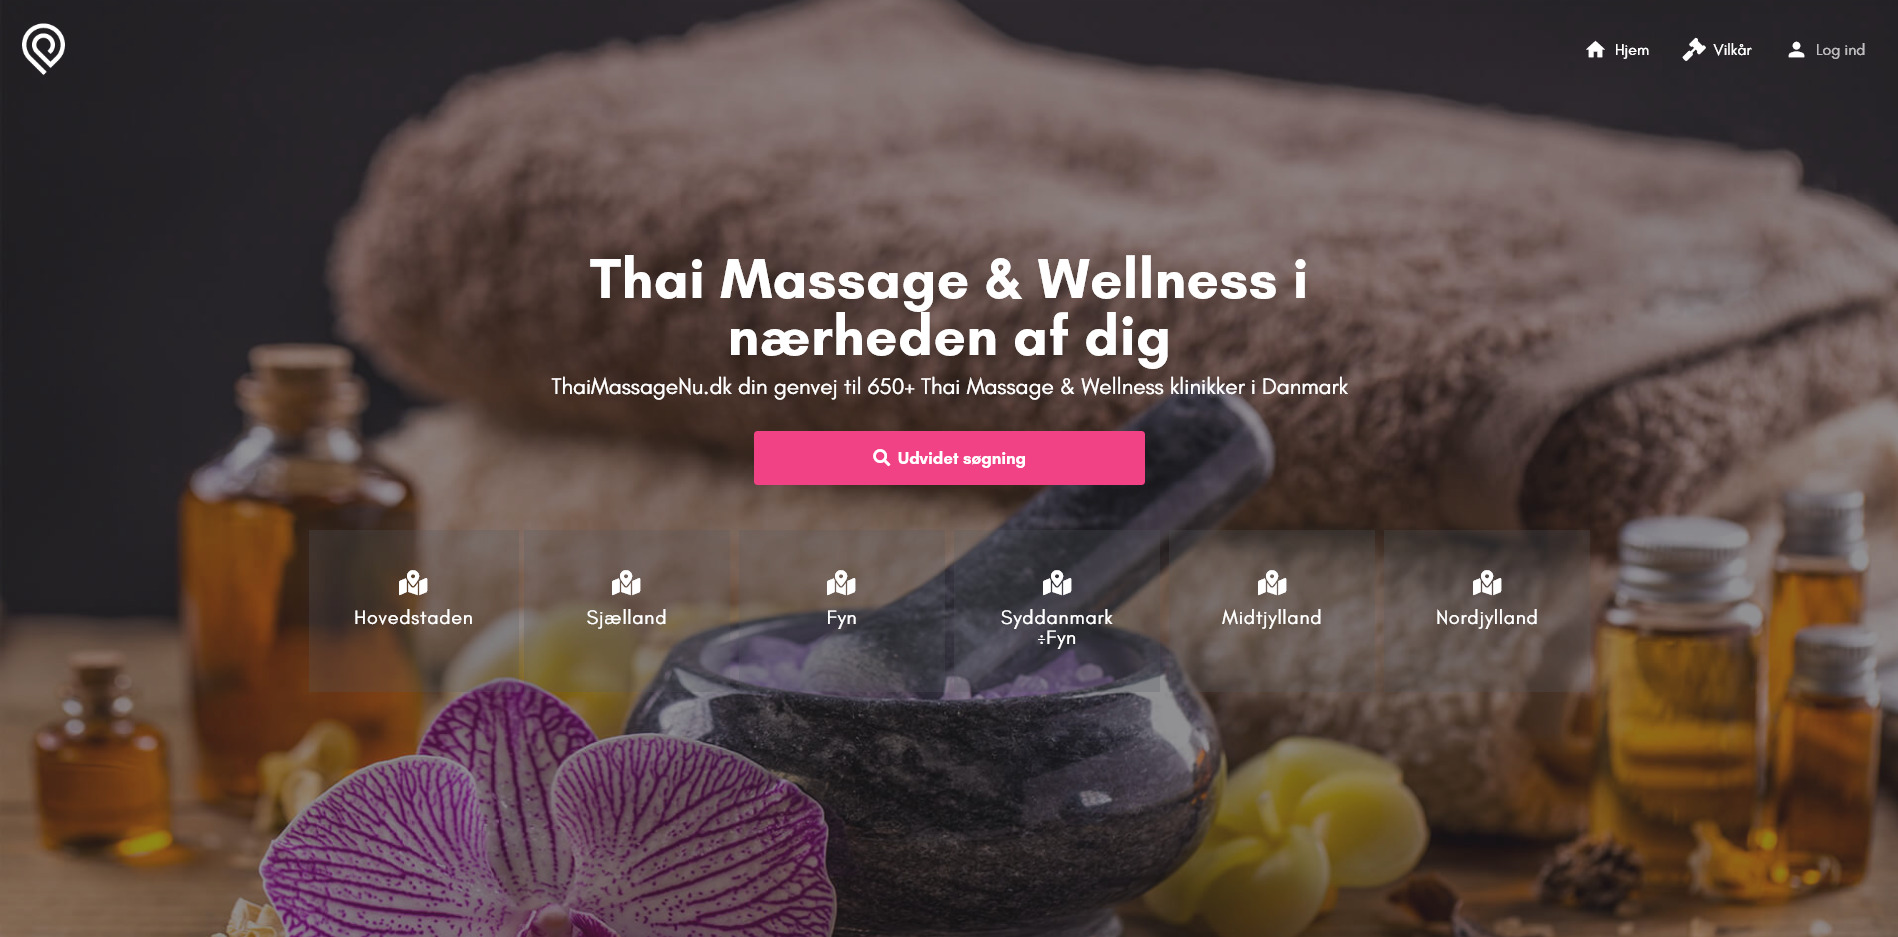 Chuleekron Thai Massage Thaimassagenu Dk